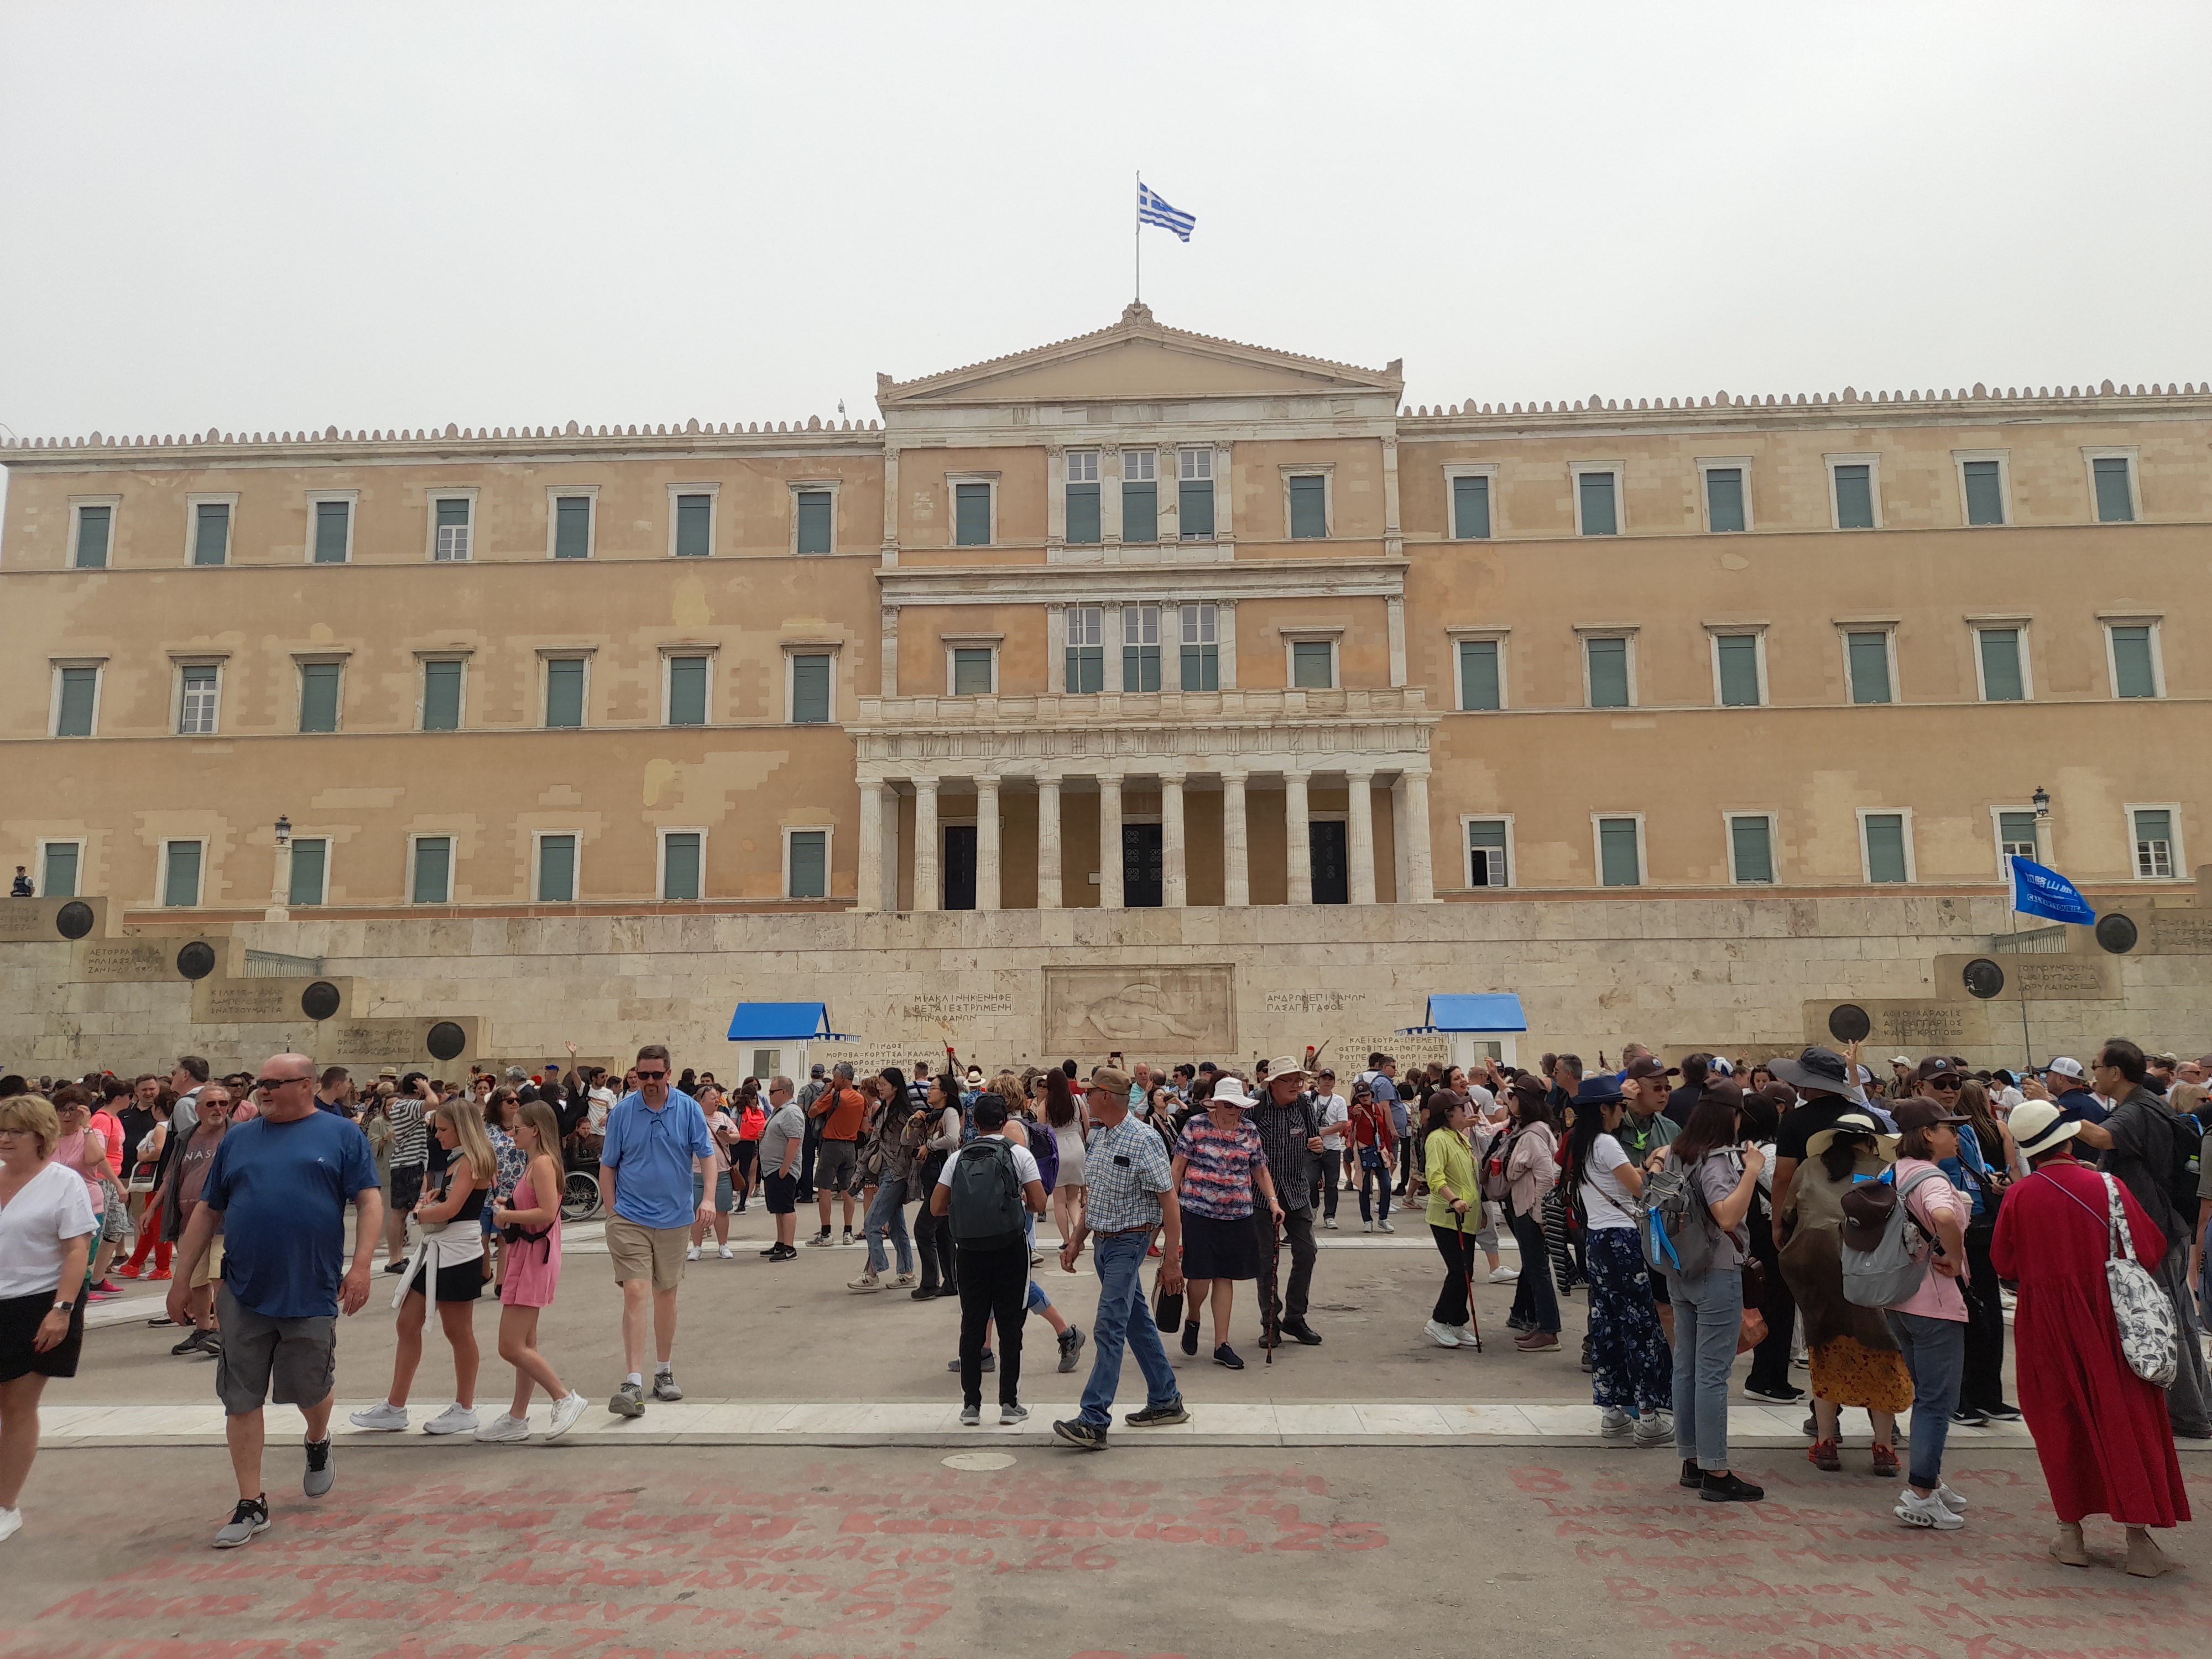 Greziako Parlamentua, Atenasko Syntagma plazan. RICARD GONZALEZ